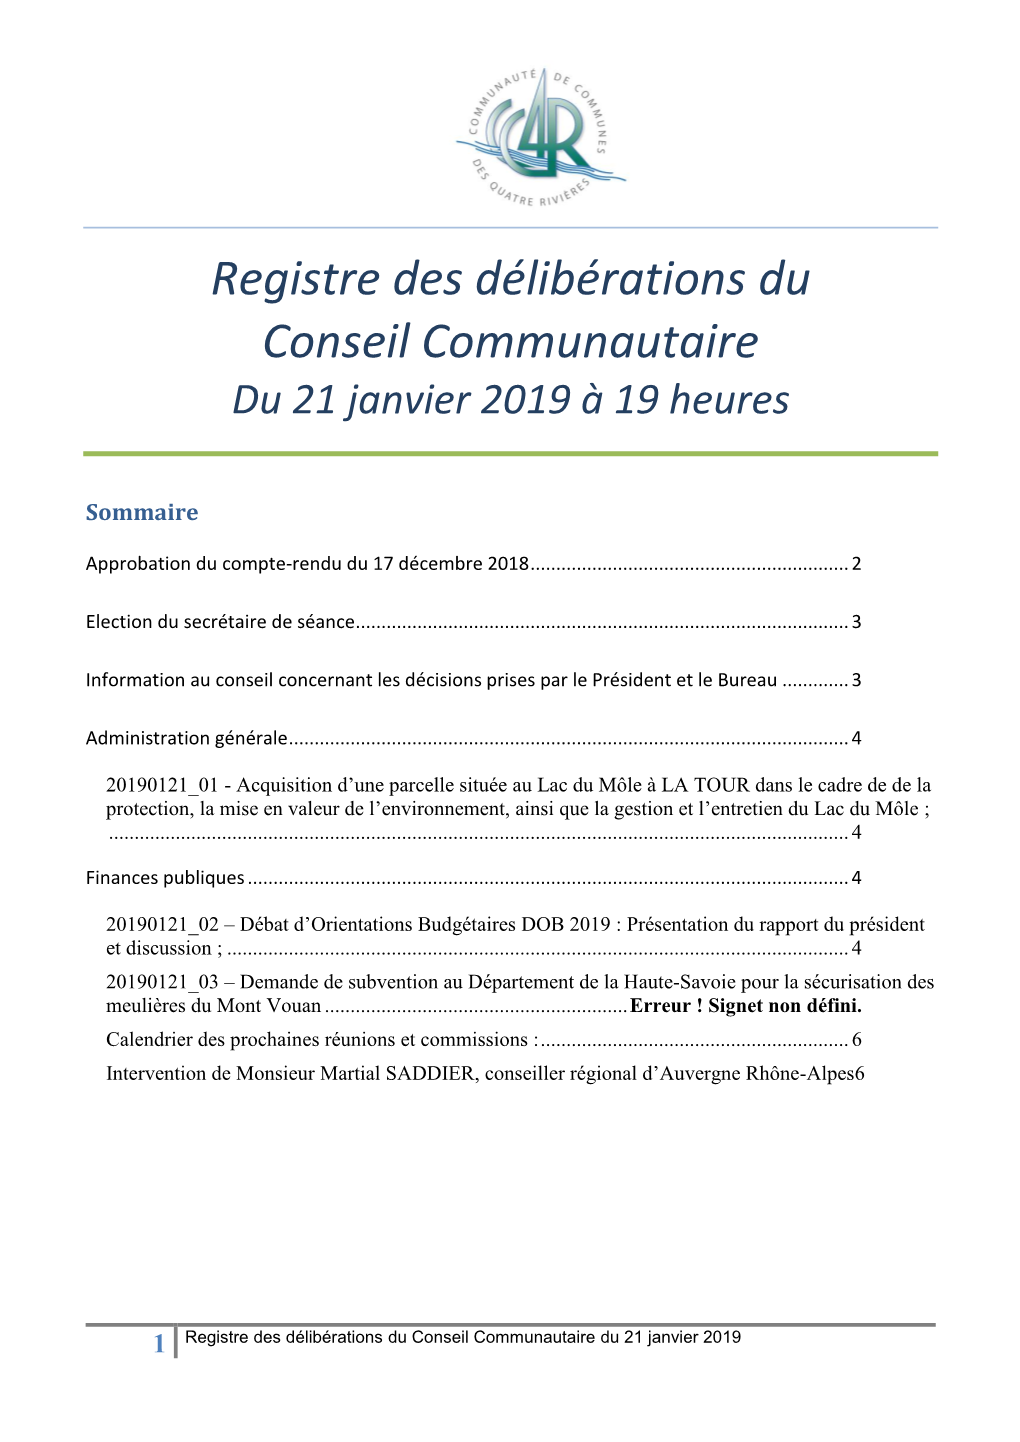 Registre Du Conseil Communautaire Du 21 Janvier 2019